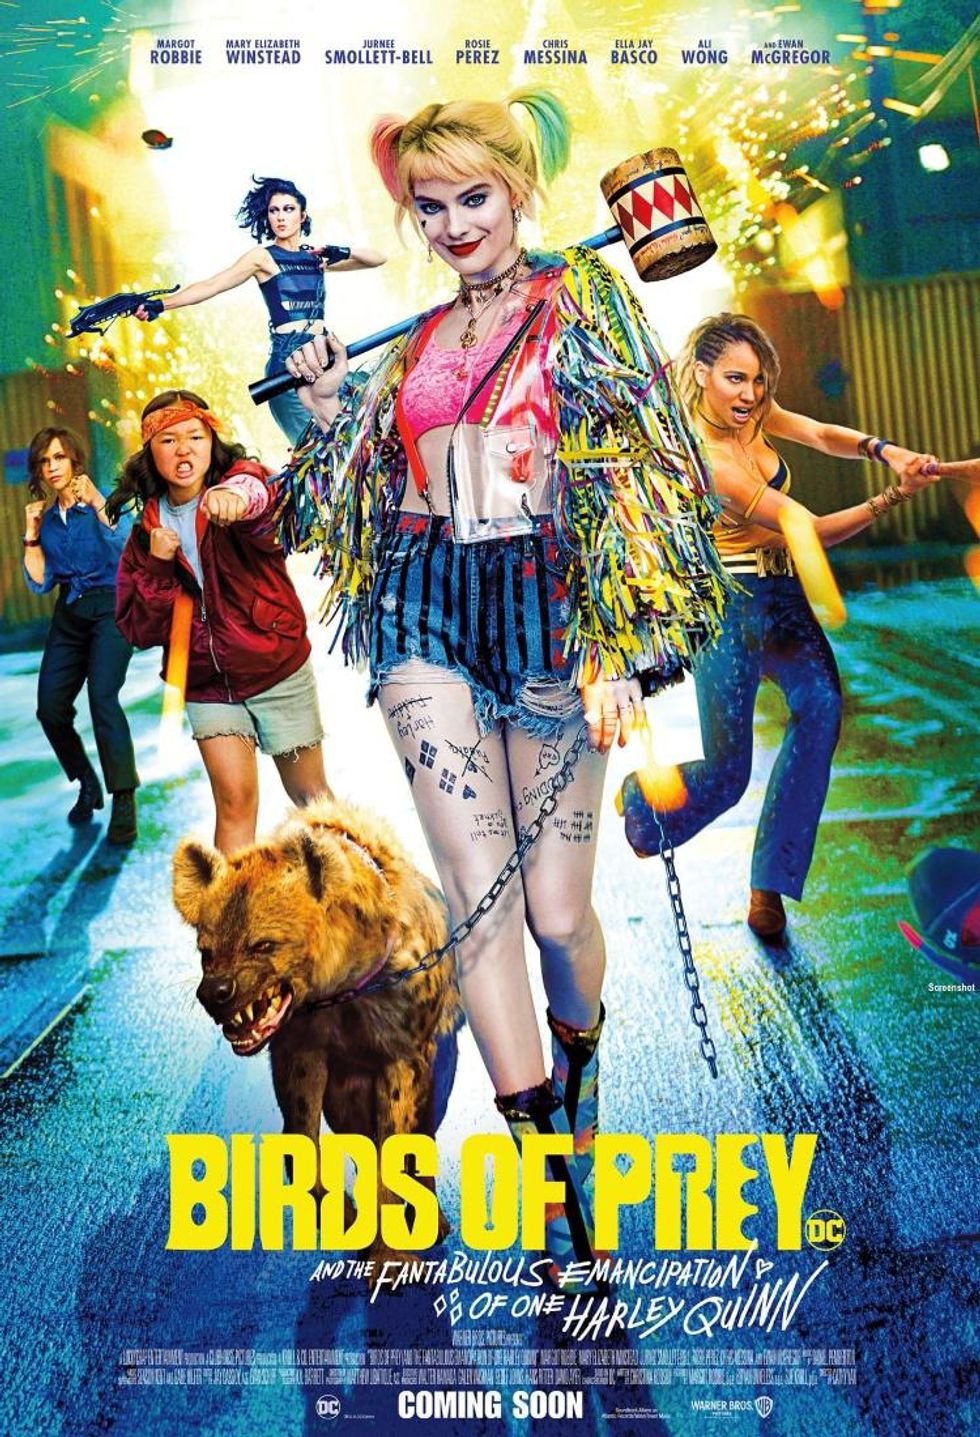 BIRDS OF PREY 2 Update From Harley Quinn (Margot Robbie) 